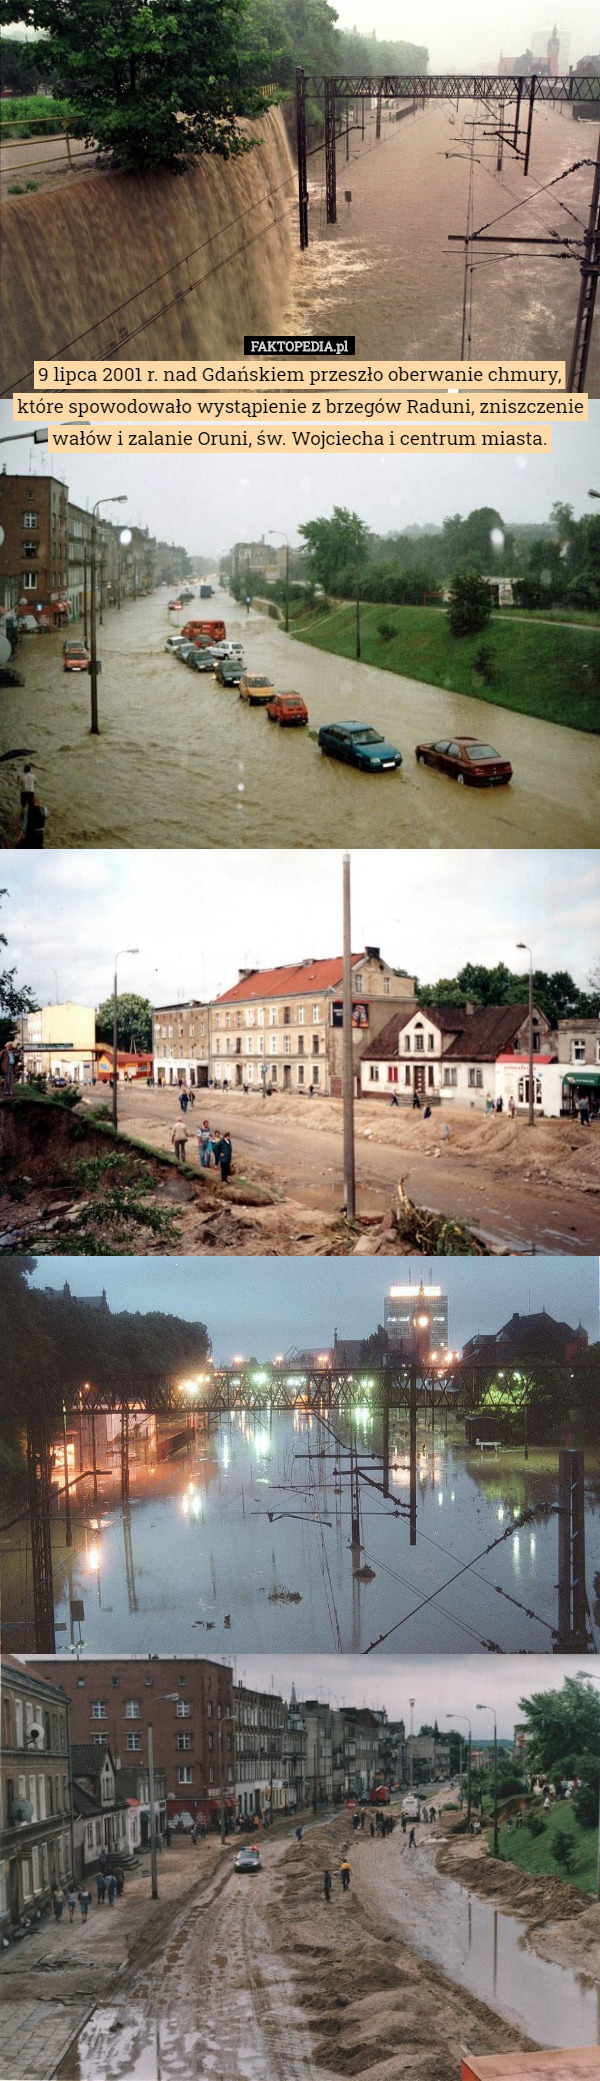 9 lipca 2001 r. nad Gdańskiem przeszło oberwanie chmury, które spowodowało wystąpienie...